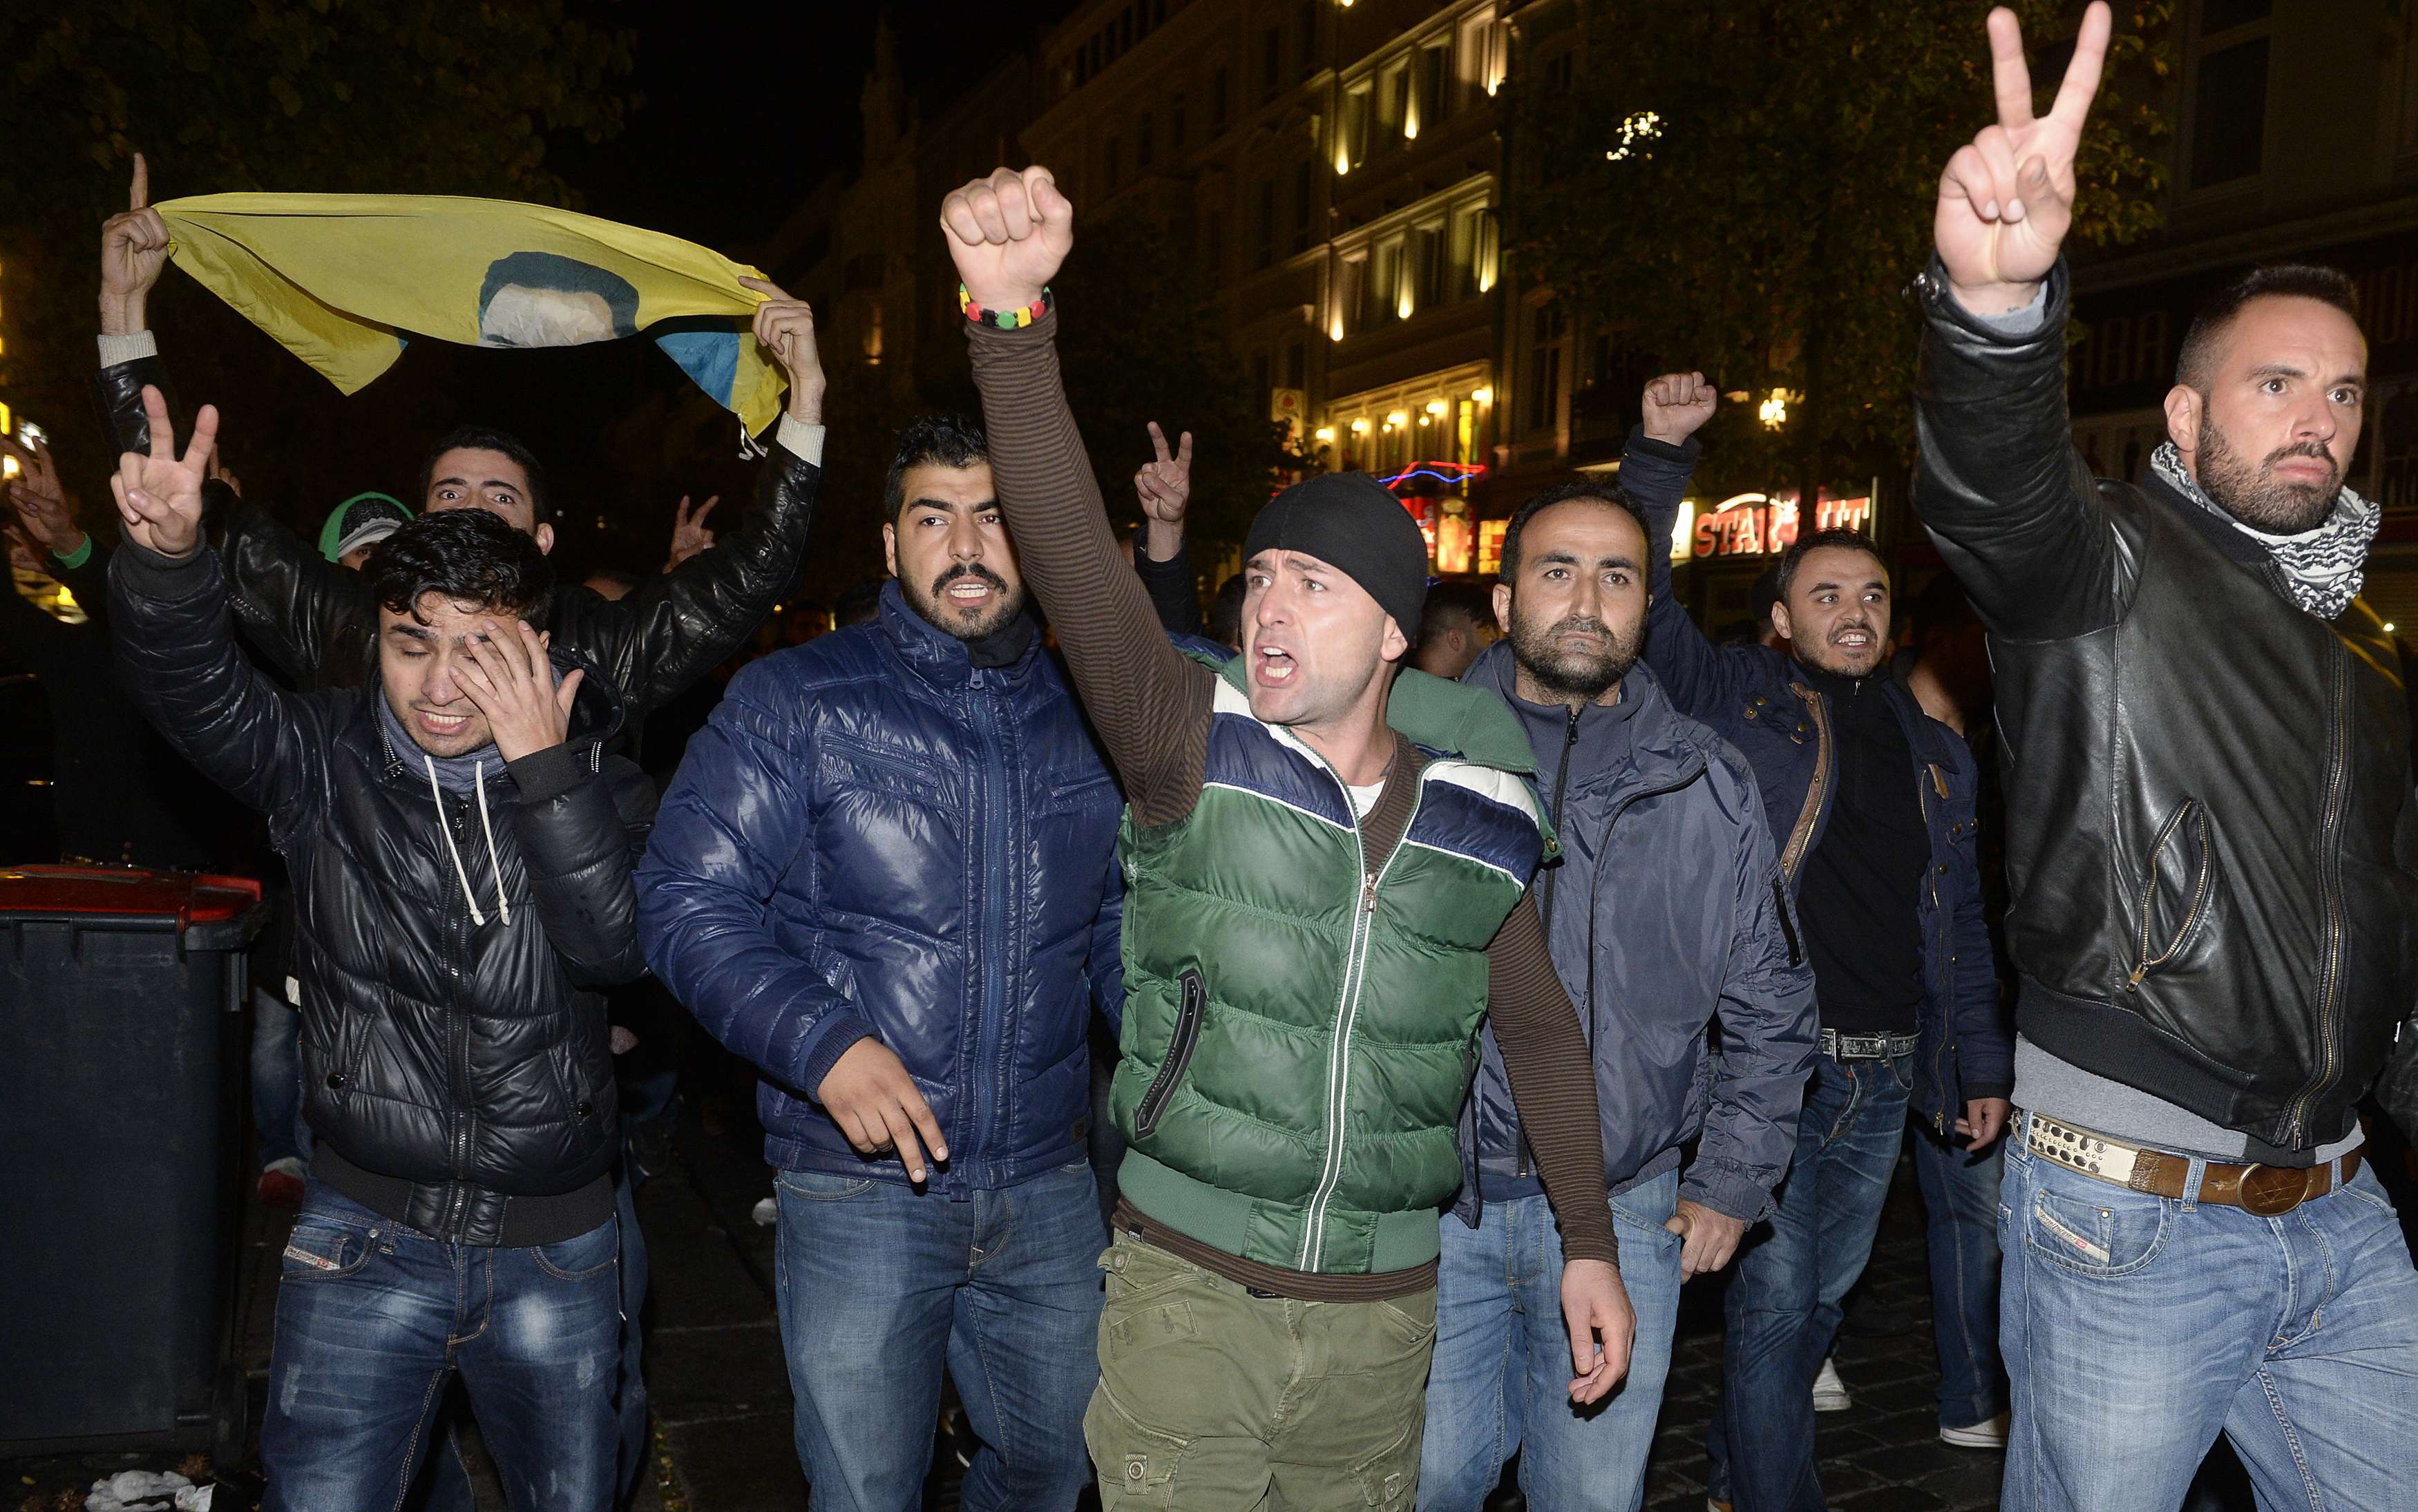 Amburgo: una notte di violenze tra curdi e islamisti